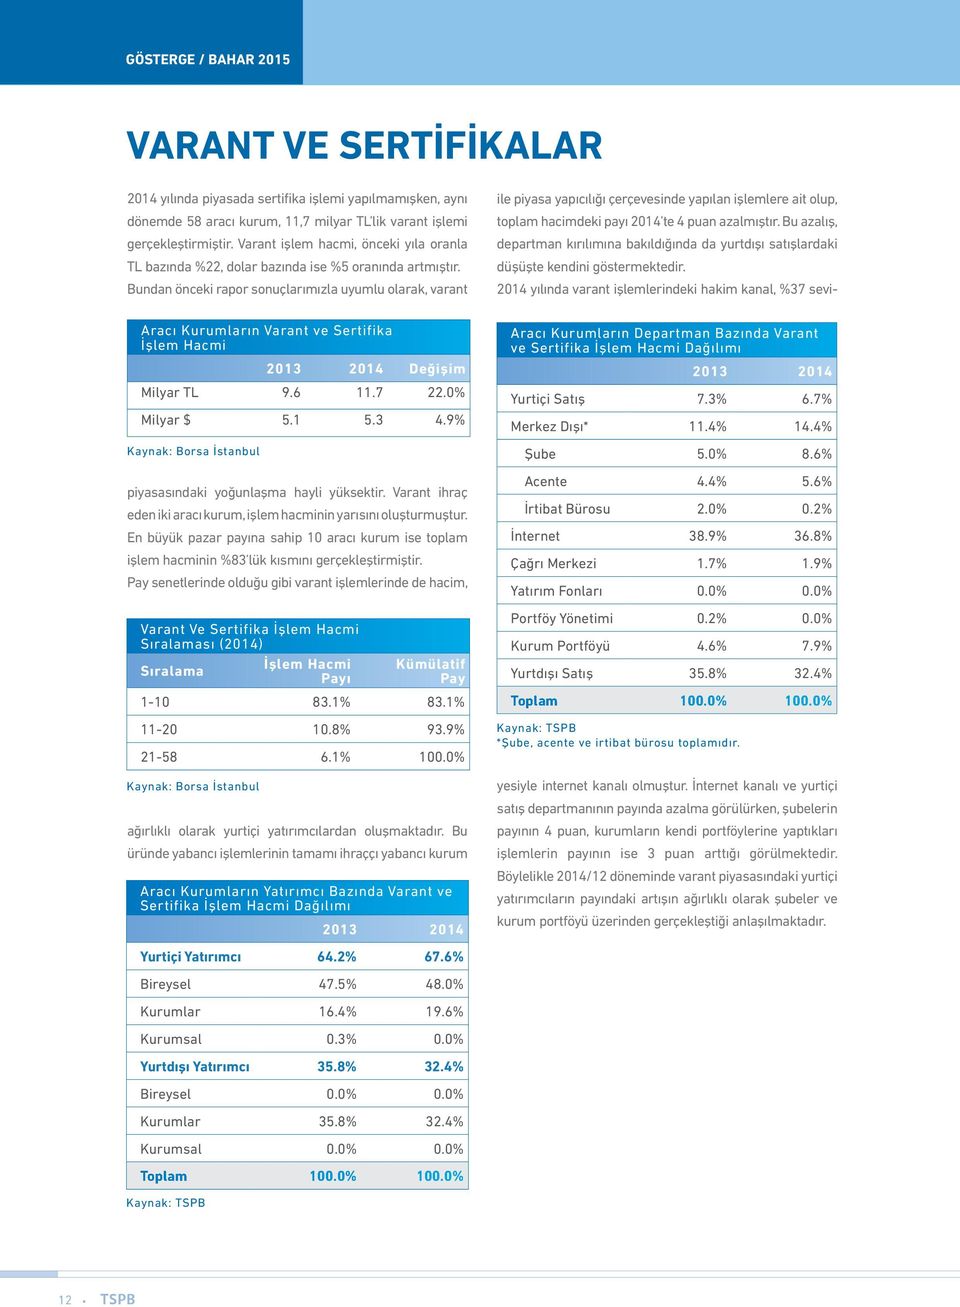 Bundan önceki rapor sonuçlarımızla uyumlu olarak, varant Aracı Kurumların Varant ve Sertifika İşlem Hacmi 2013 2014 Değişim Milyar TL 9.6 11.7 22.0% Milyar $ 5.1 5.3 4.